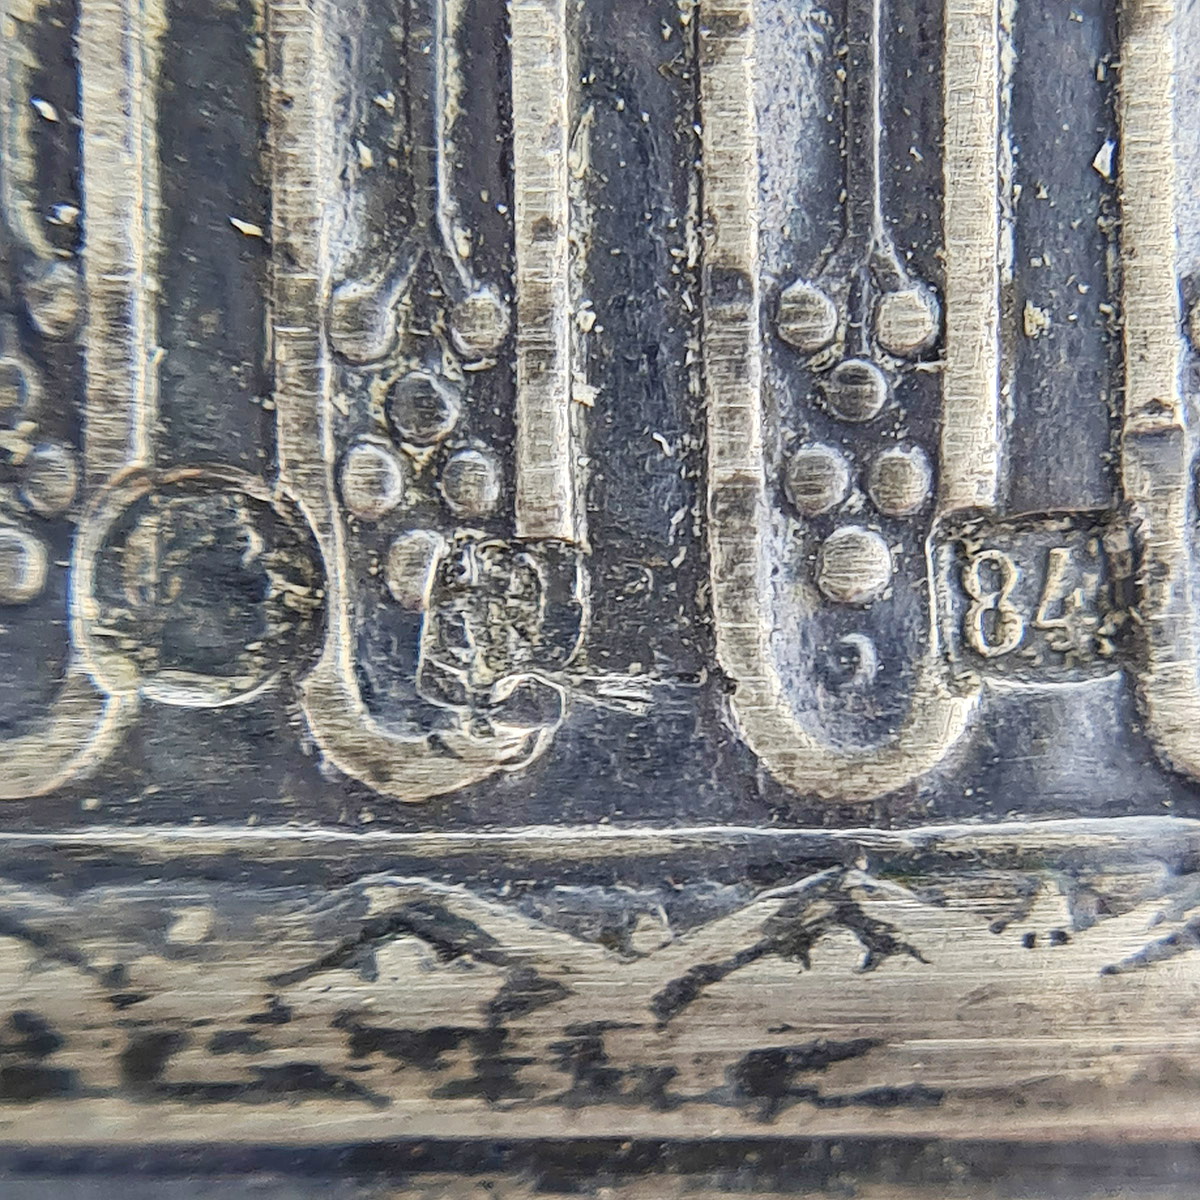 Фруктовница из хрусталя с серебряным кантом 84 пробы 19 века